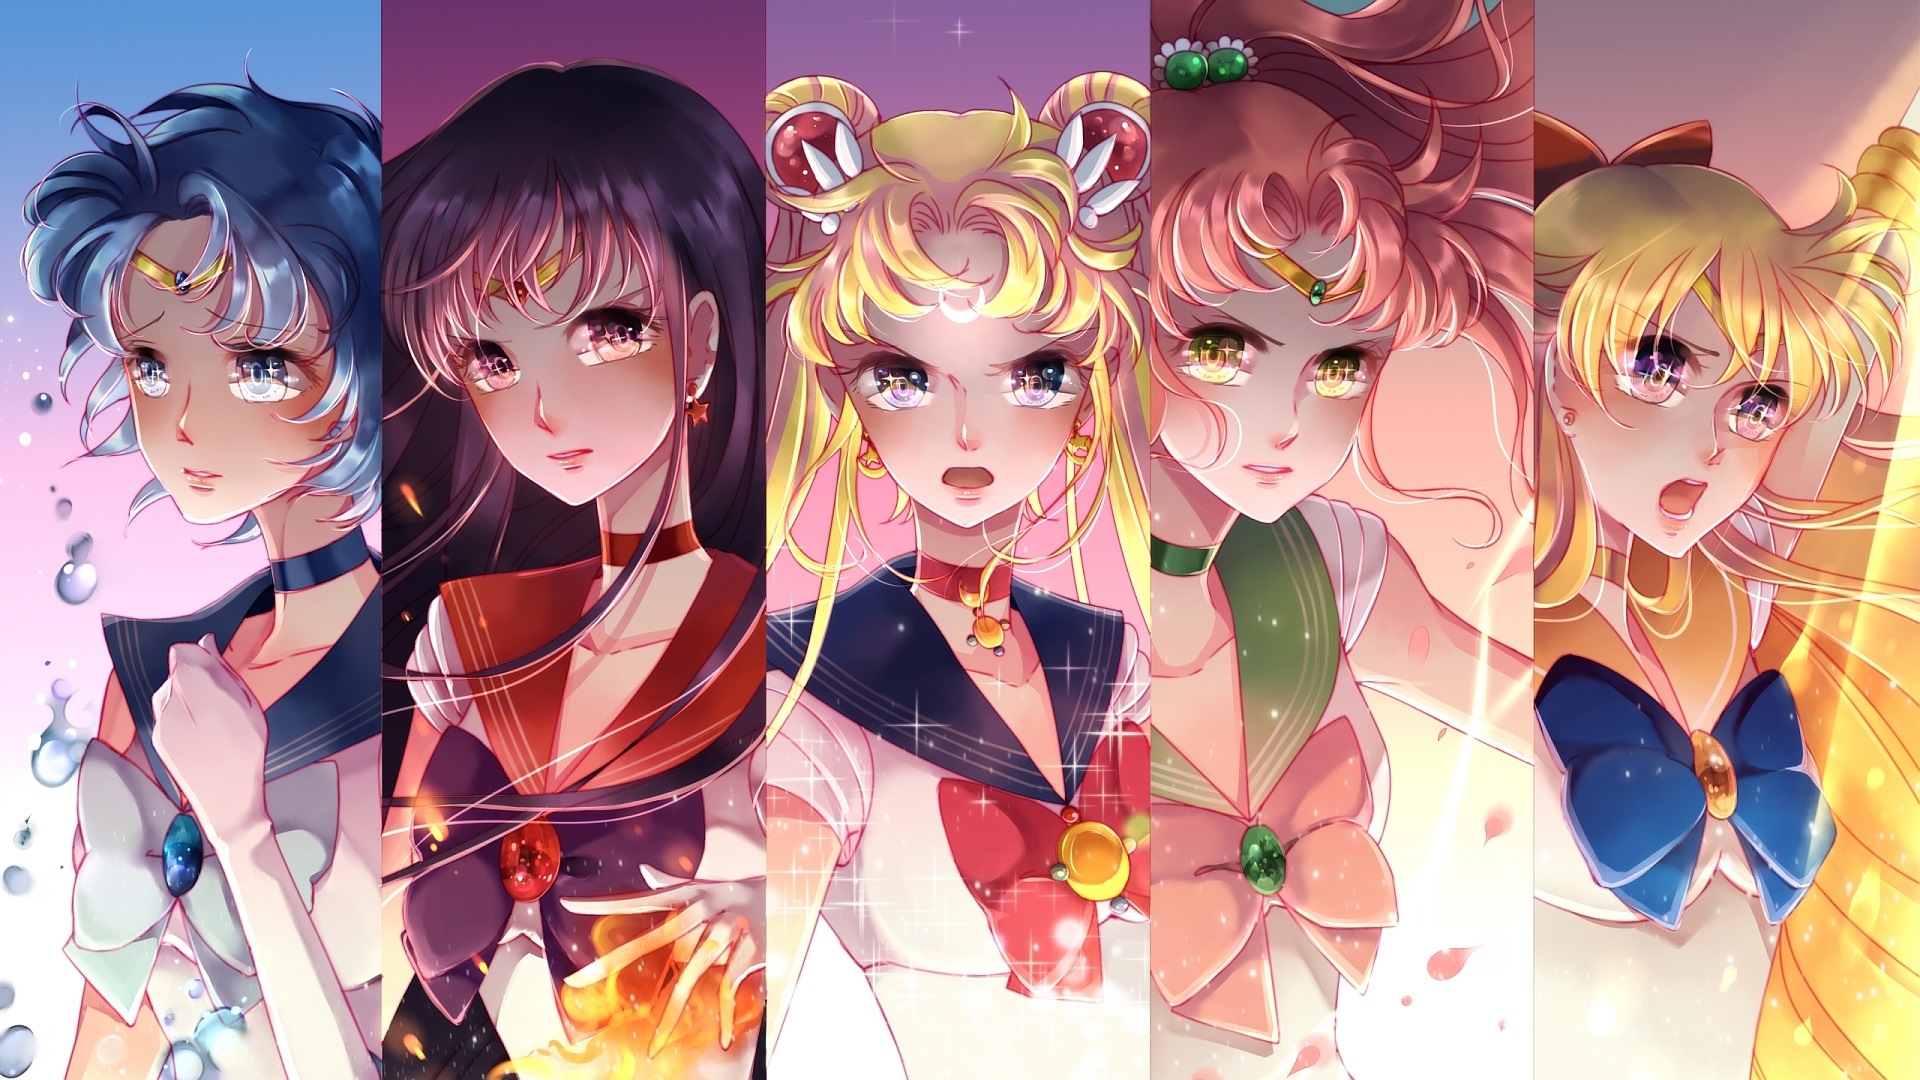 THƯ VIỆN ANIME   ANIME THỦY THỦ MẶT TRĂNG  Sailor Moon and Sailor Chibi  Moon   Anime Sailor moon crystal Chibi